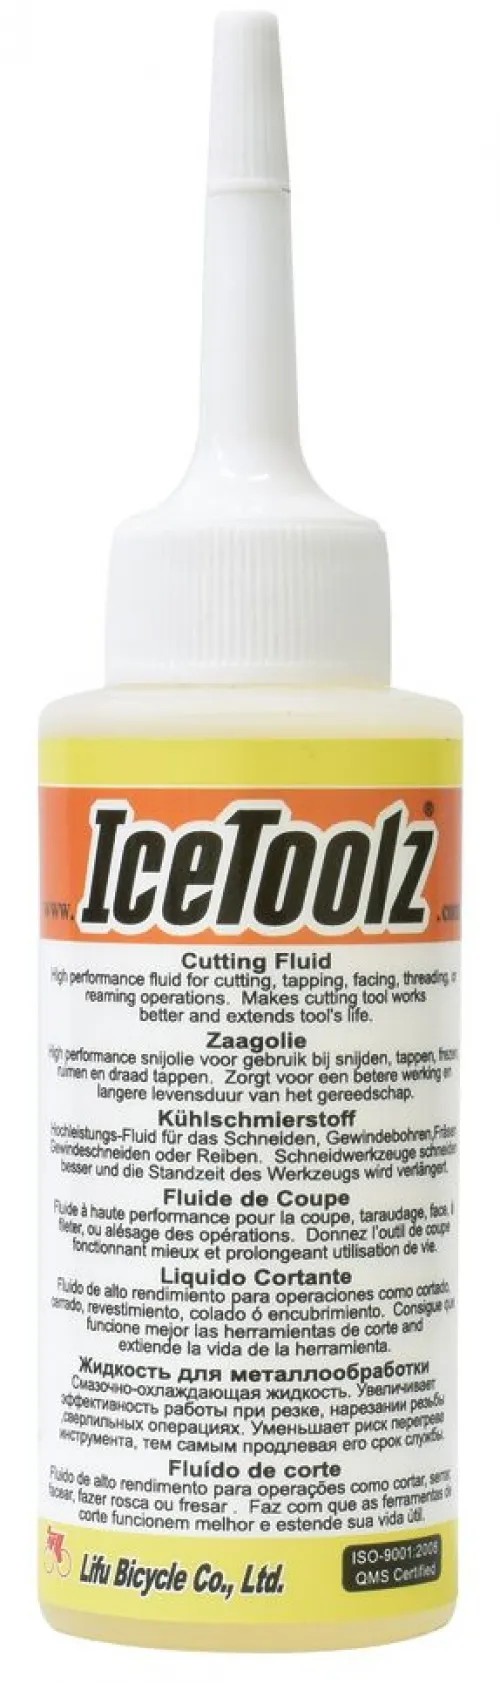 Жидкость ICE TOOLZ C143 для металлообработки